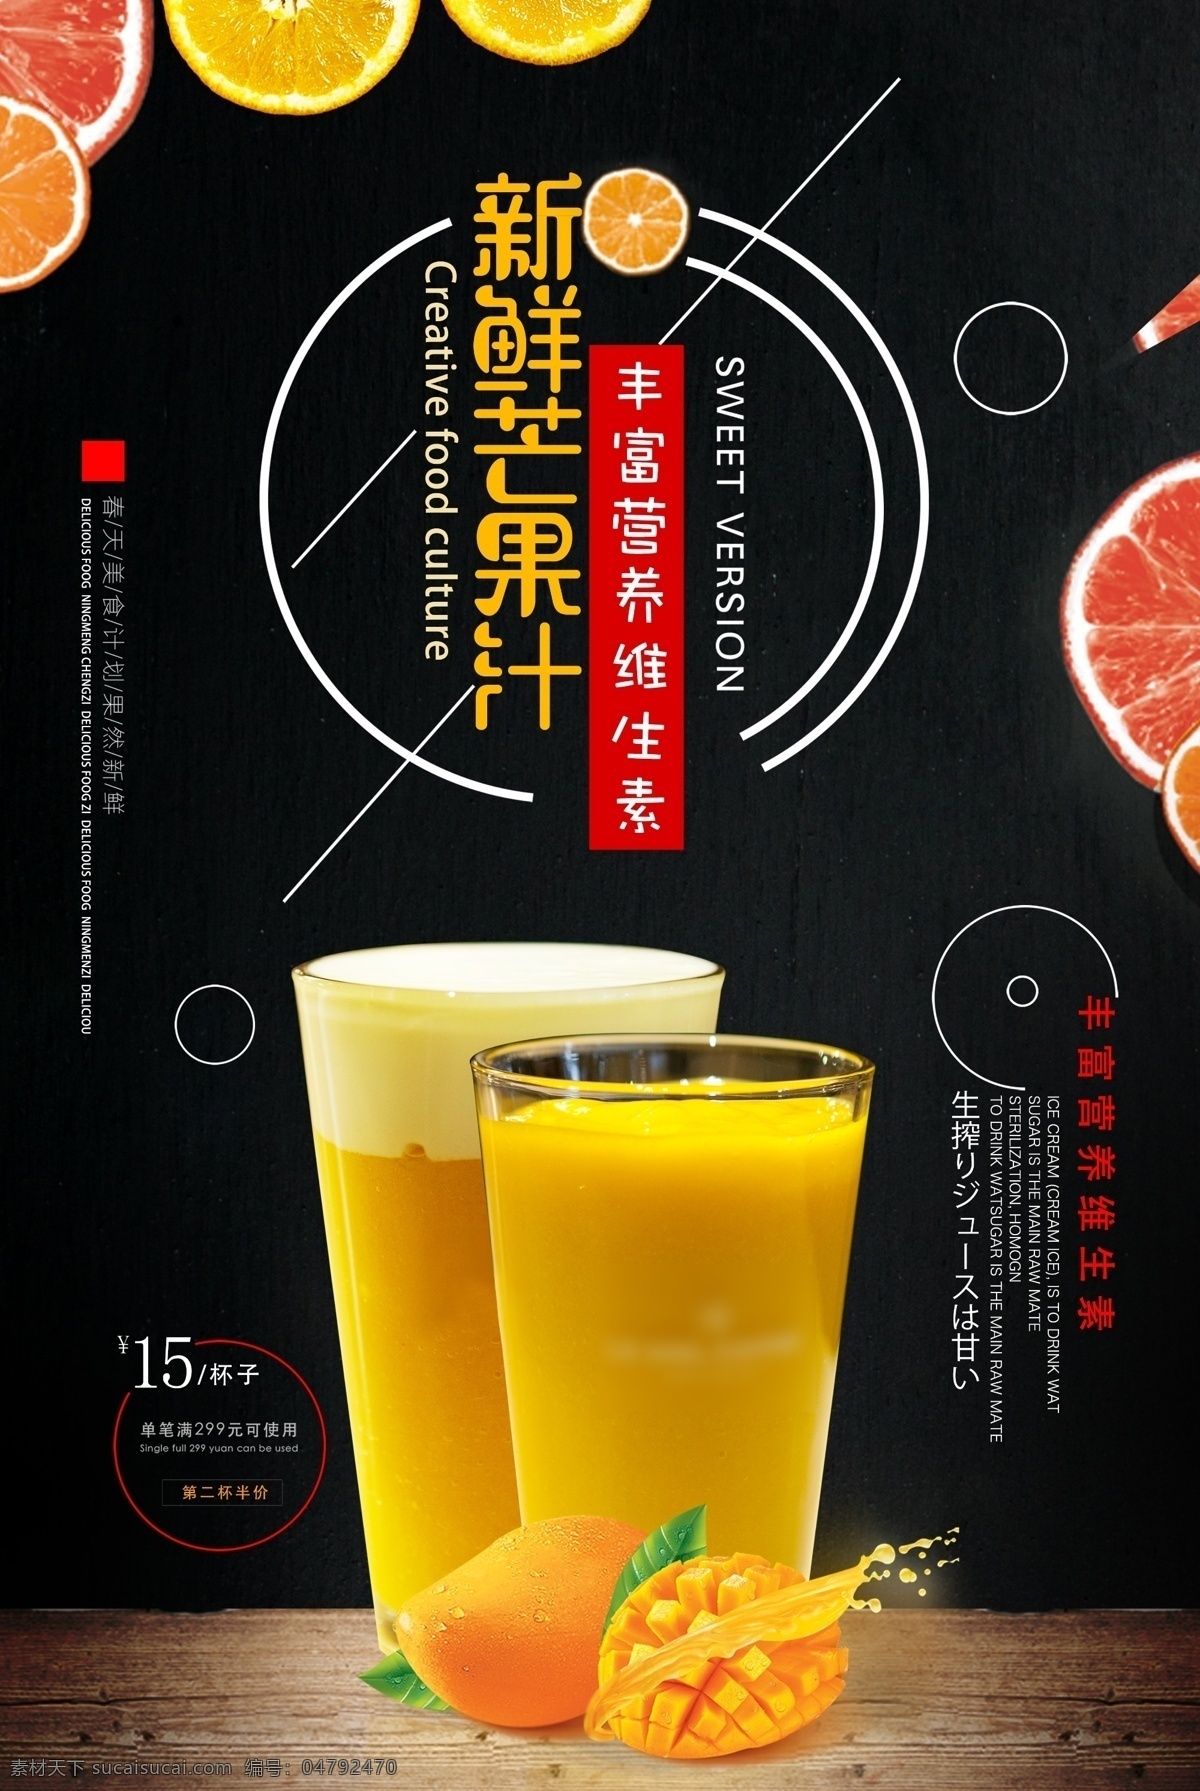 芒果汁 饮品 饮料 活动 海报 素材图片 甜品 类